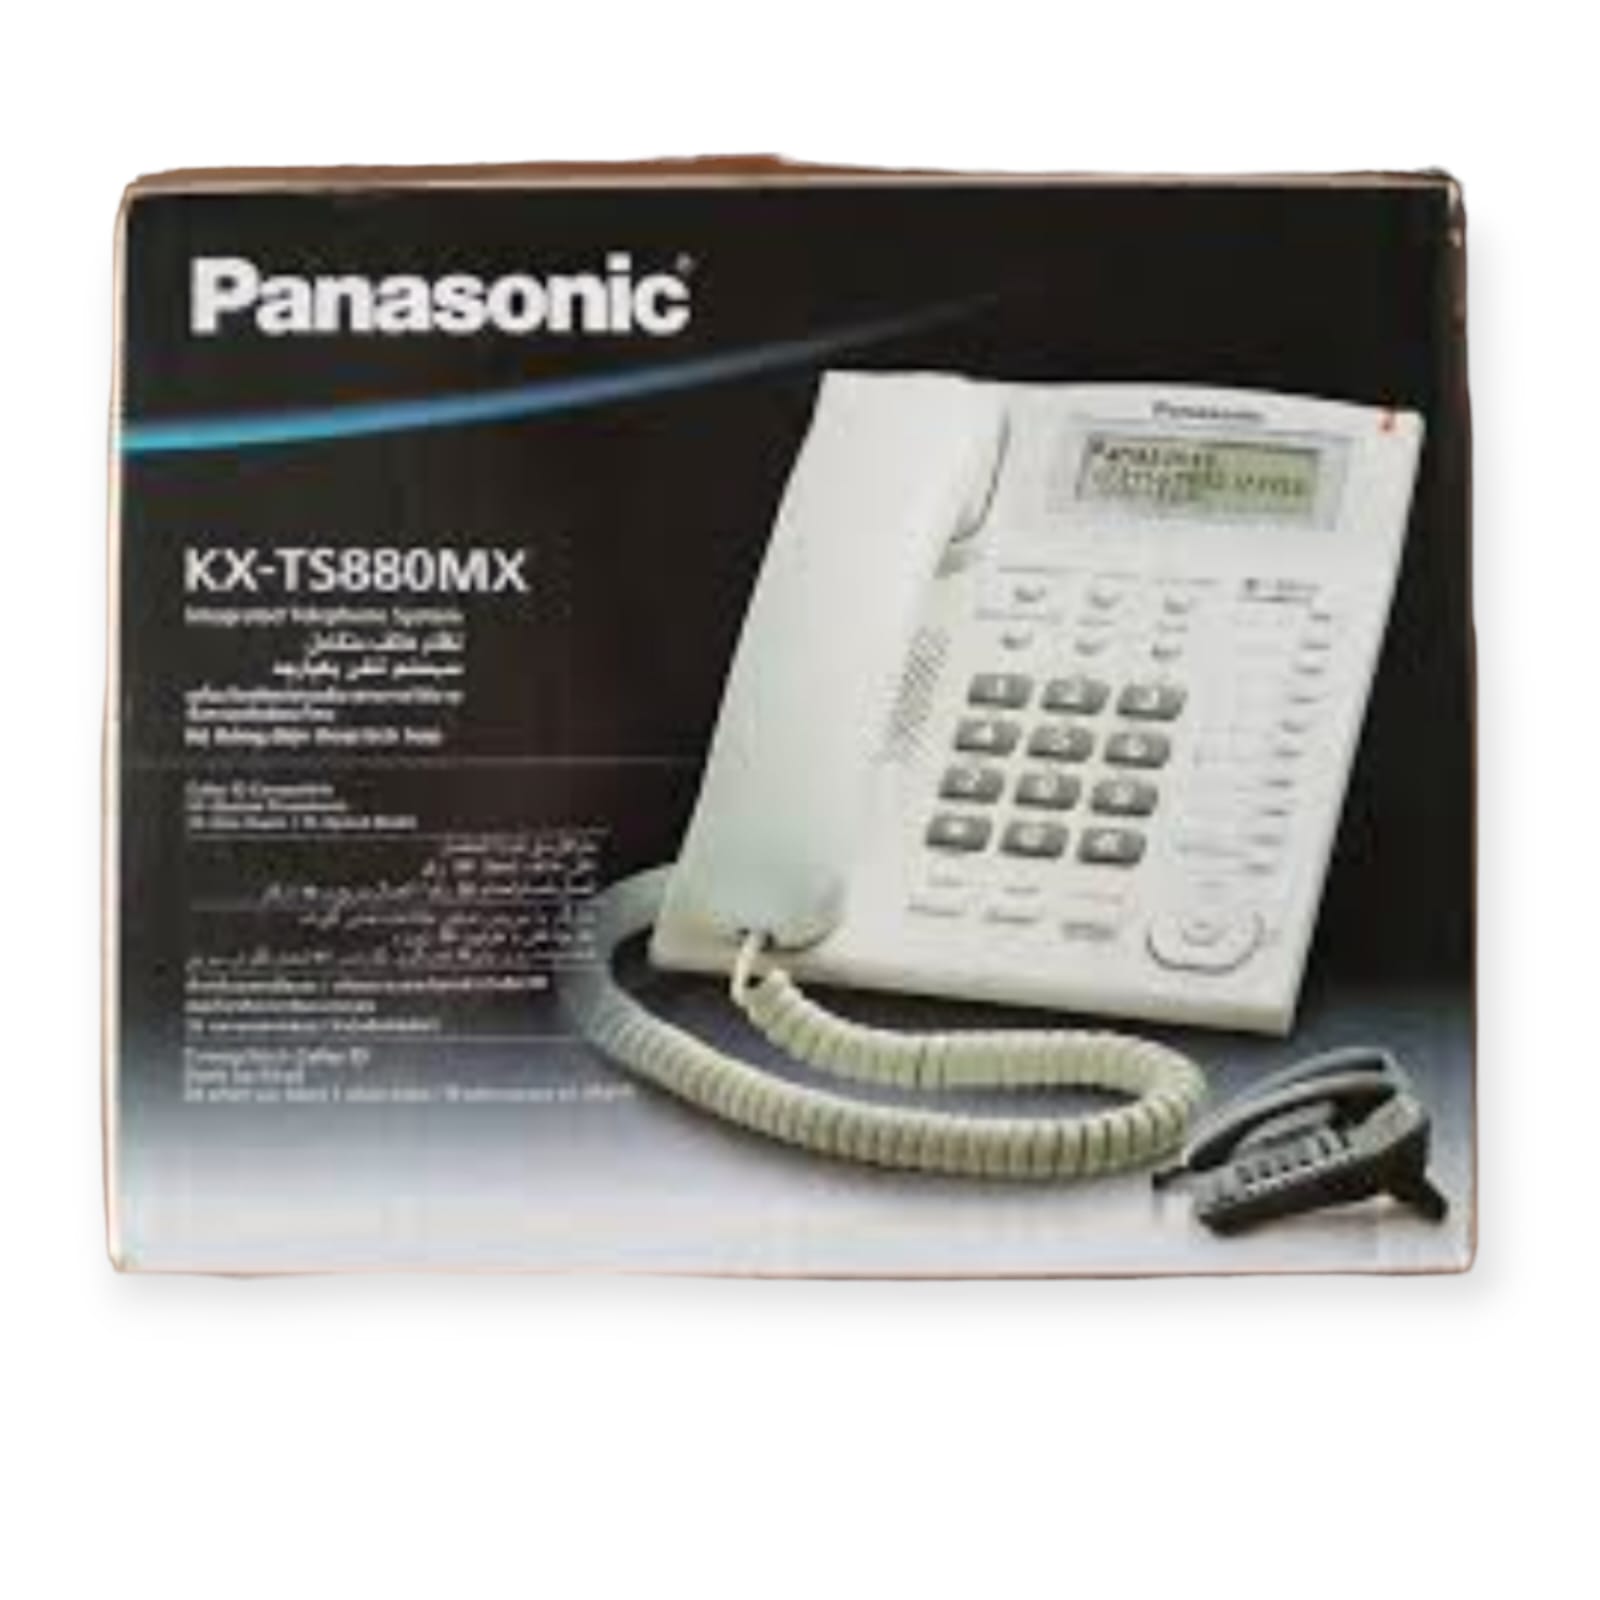 Panasonic Telephone 